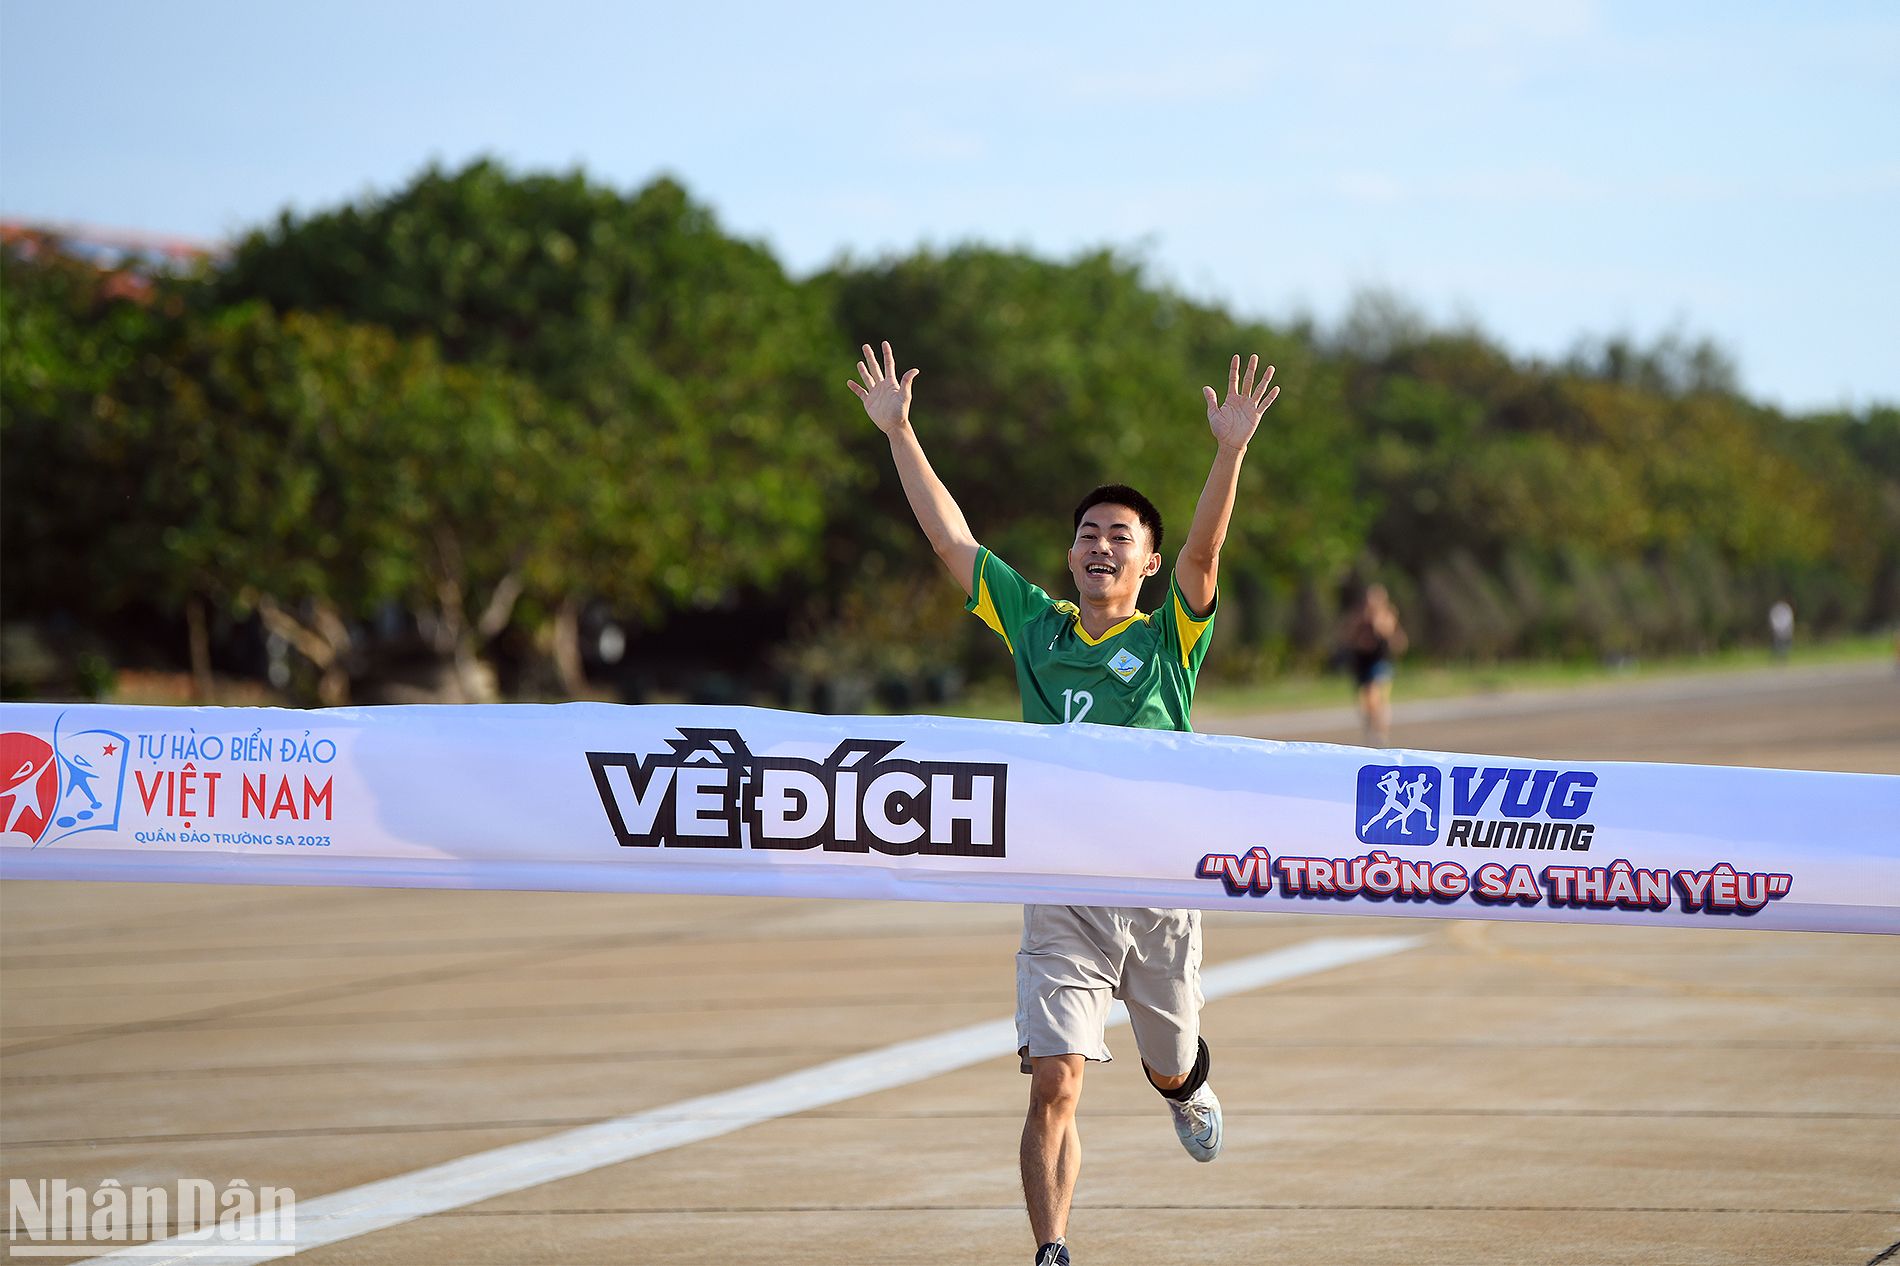 Niềm vui của vận động viên cán đích đầu tiên trong giải chạy "Vì Trường Sa thân yêu".